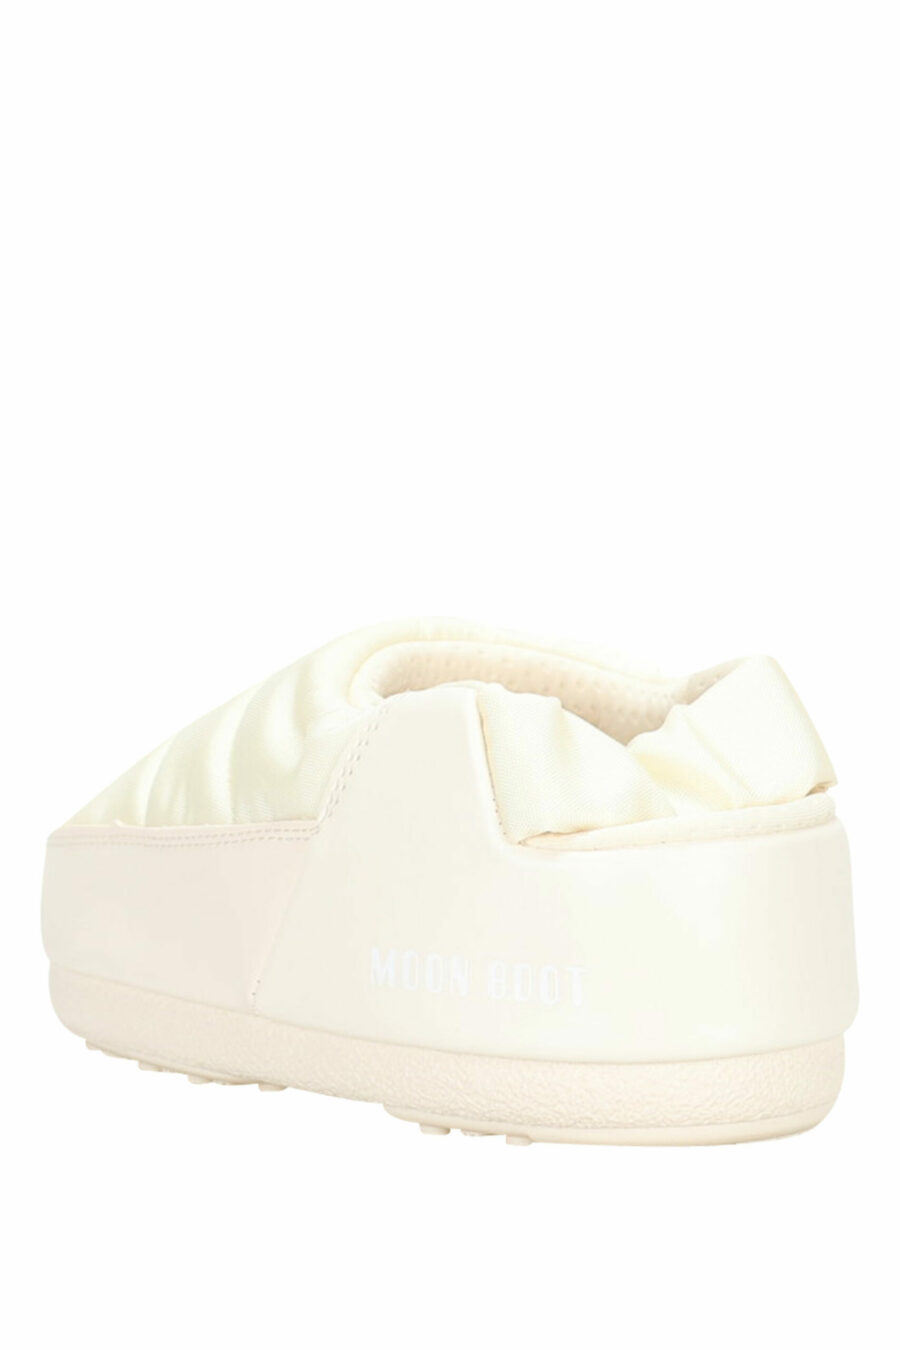 Sandales blanches avec mini-logo blanc - 8050032004080 4 échelles